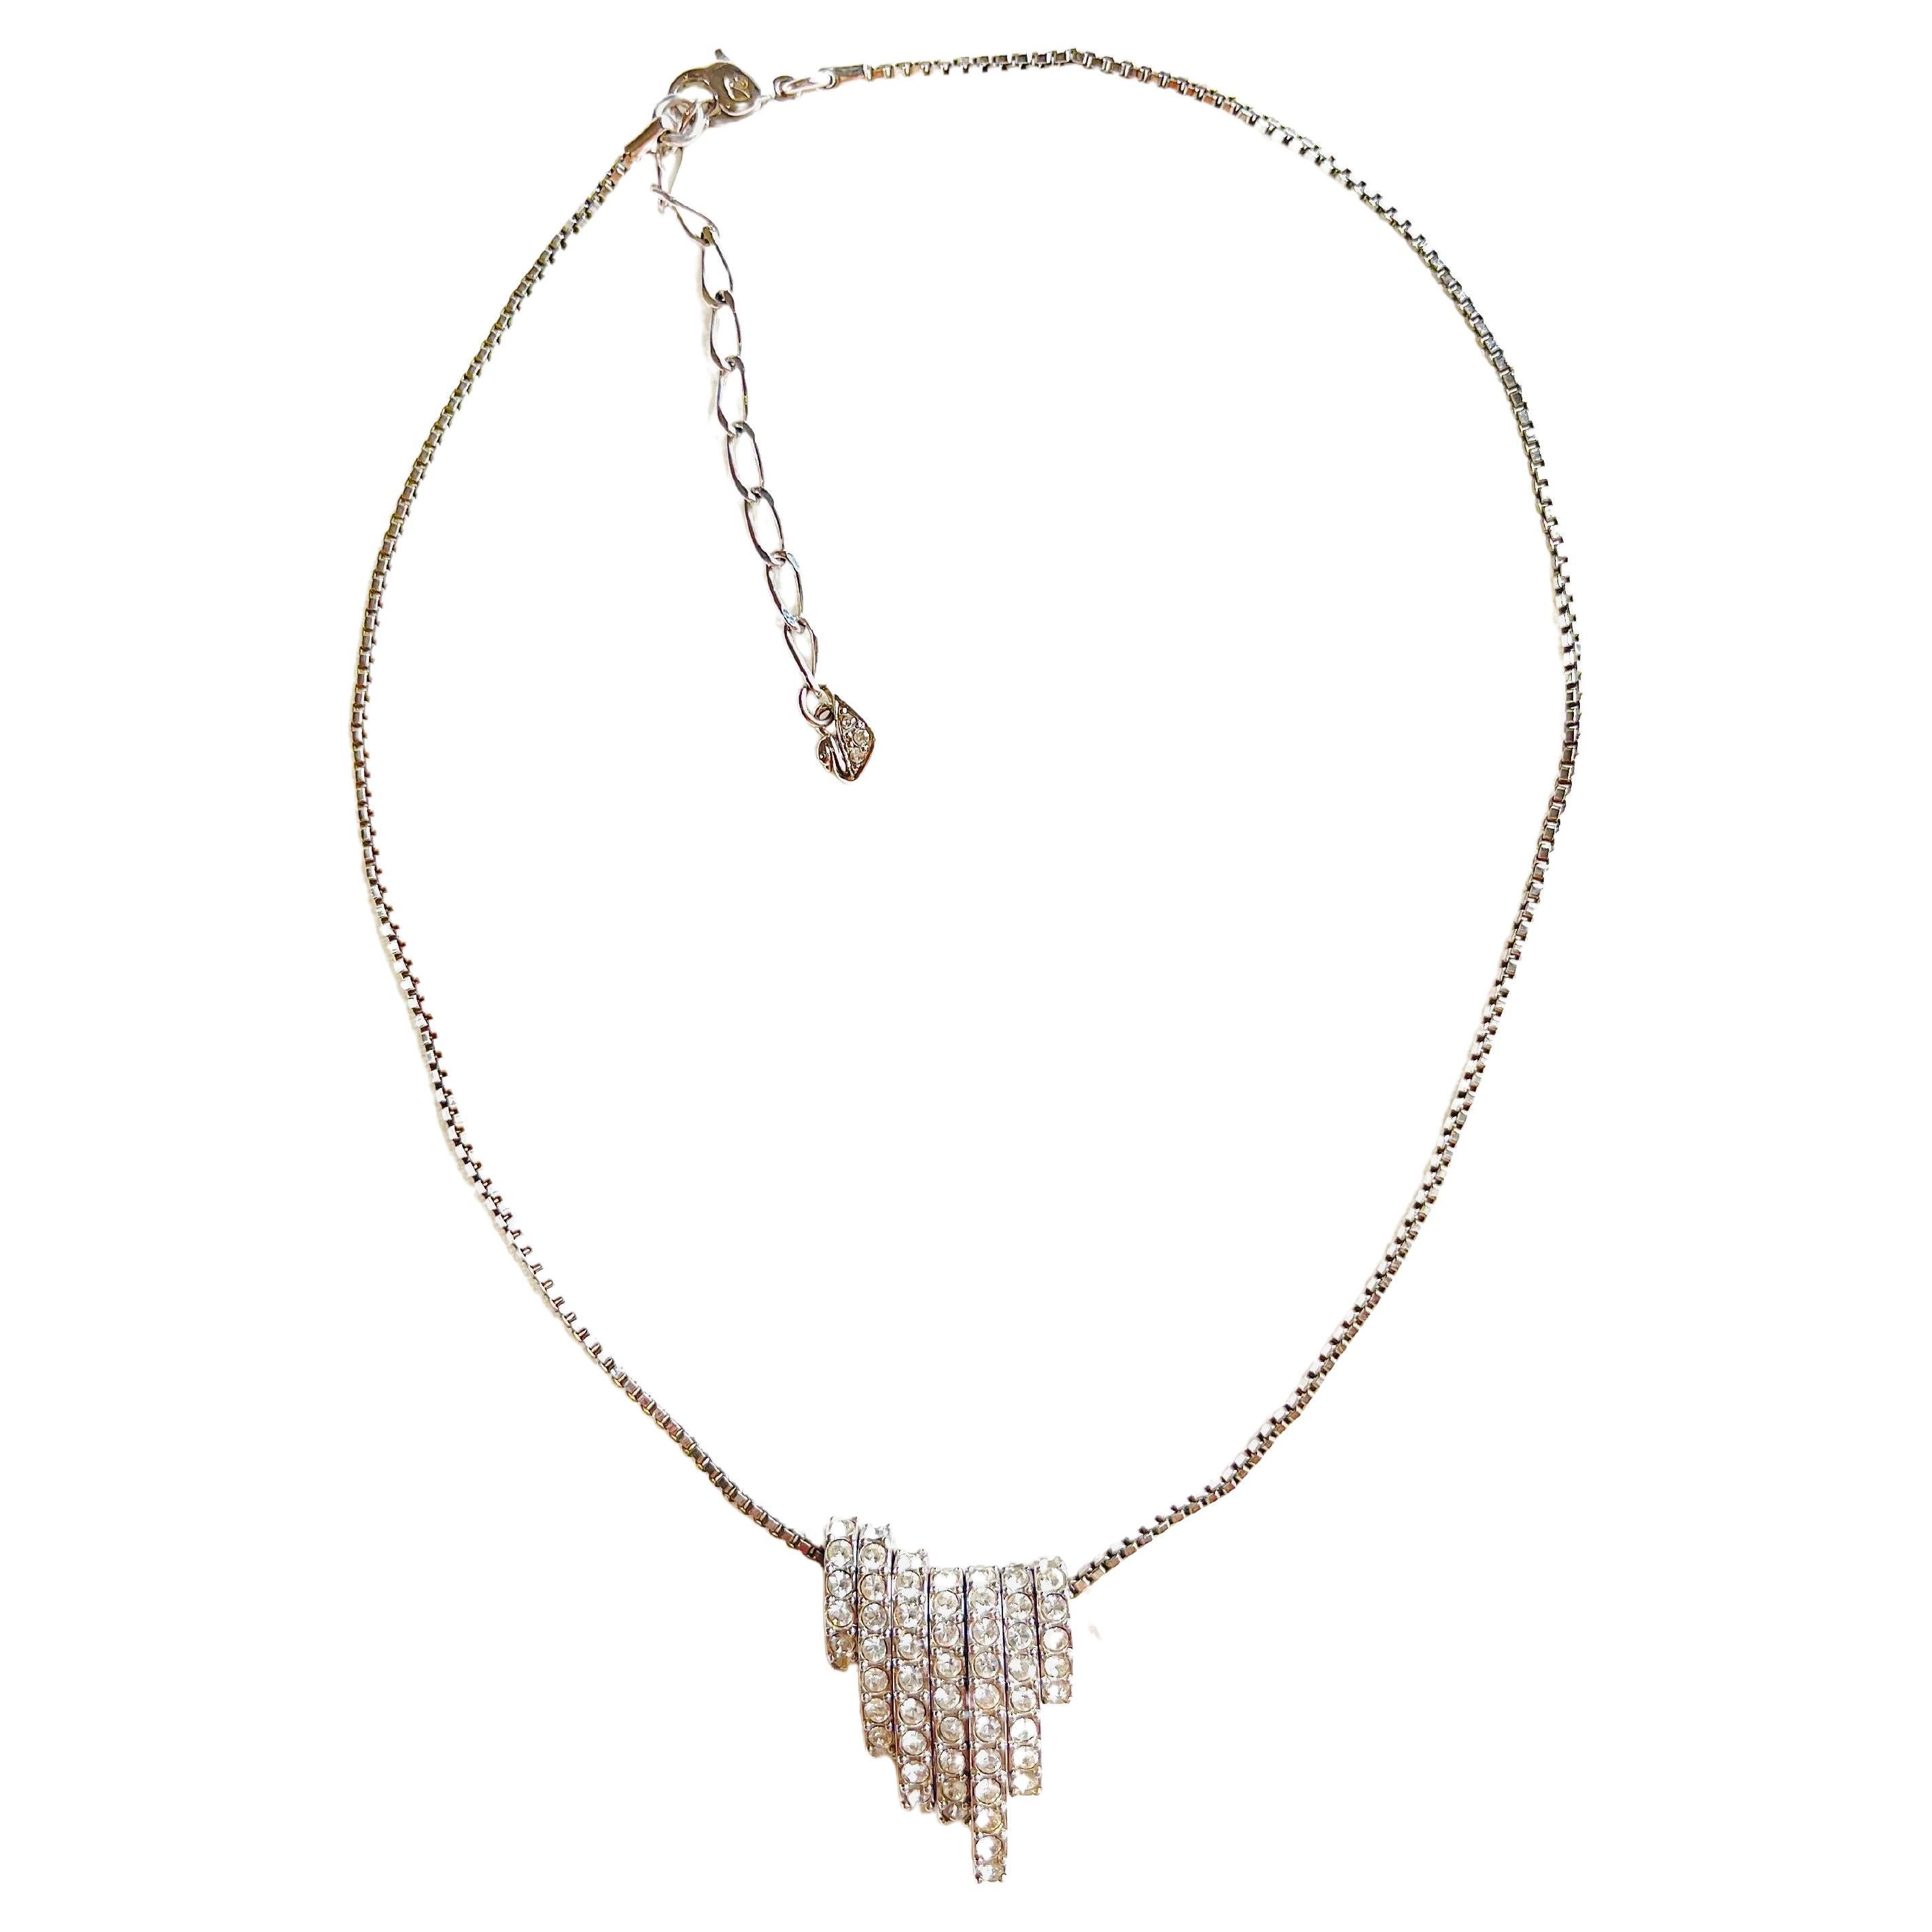 Swarovski Collier pendentif à 7 anneaux interchangeables en argent et cristaux blancs pailletés